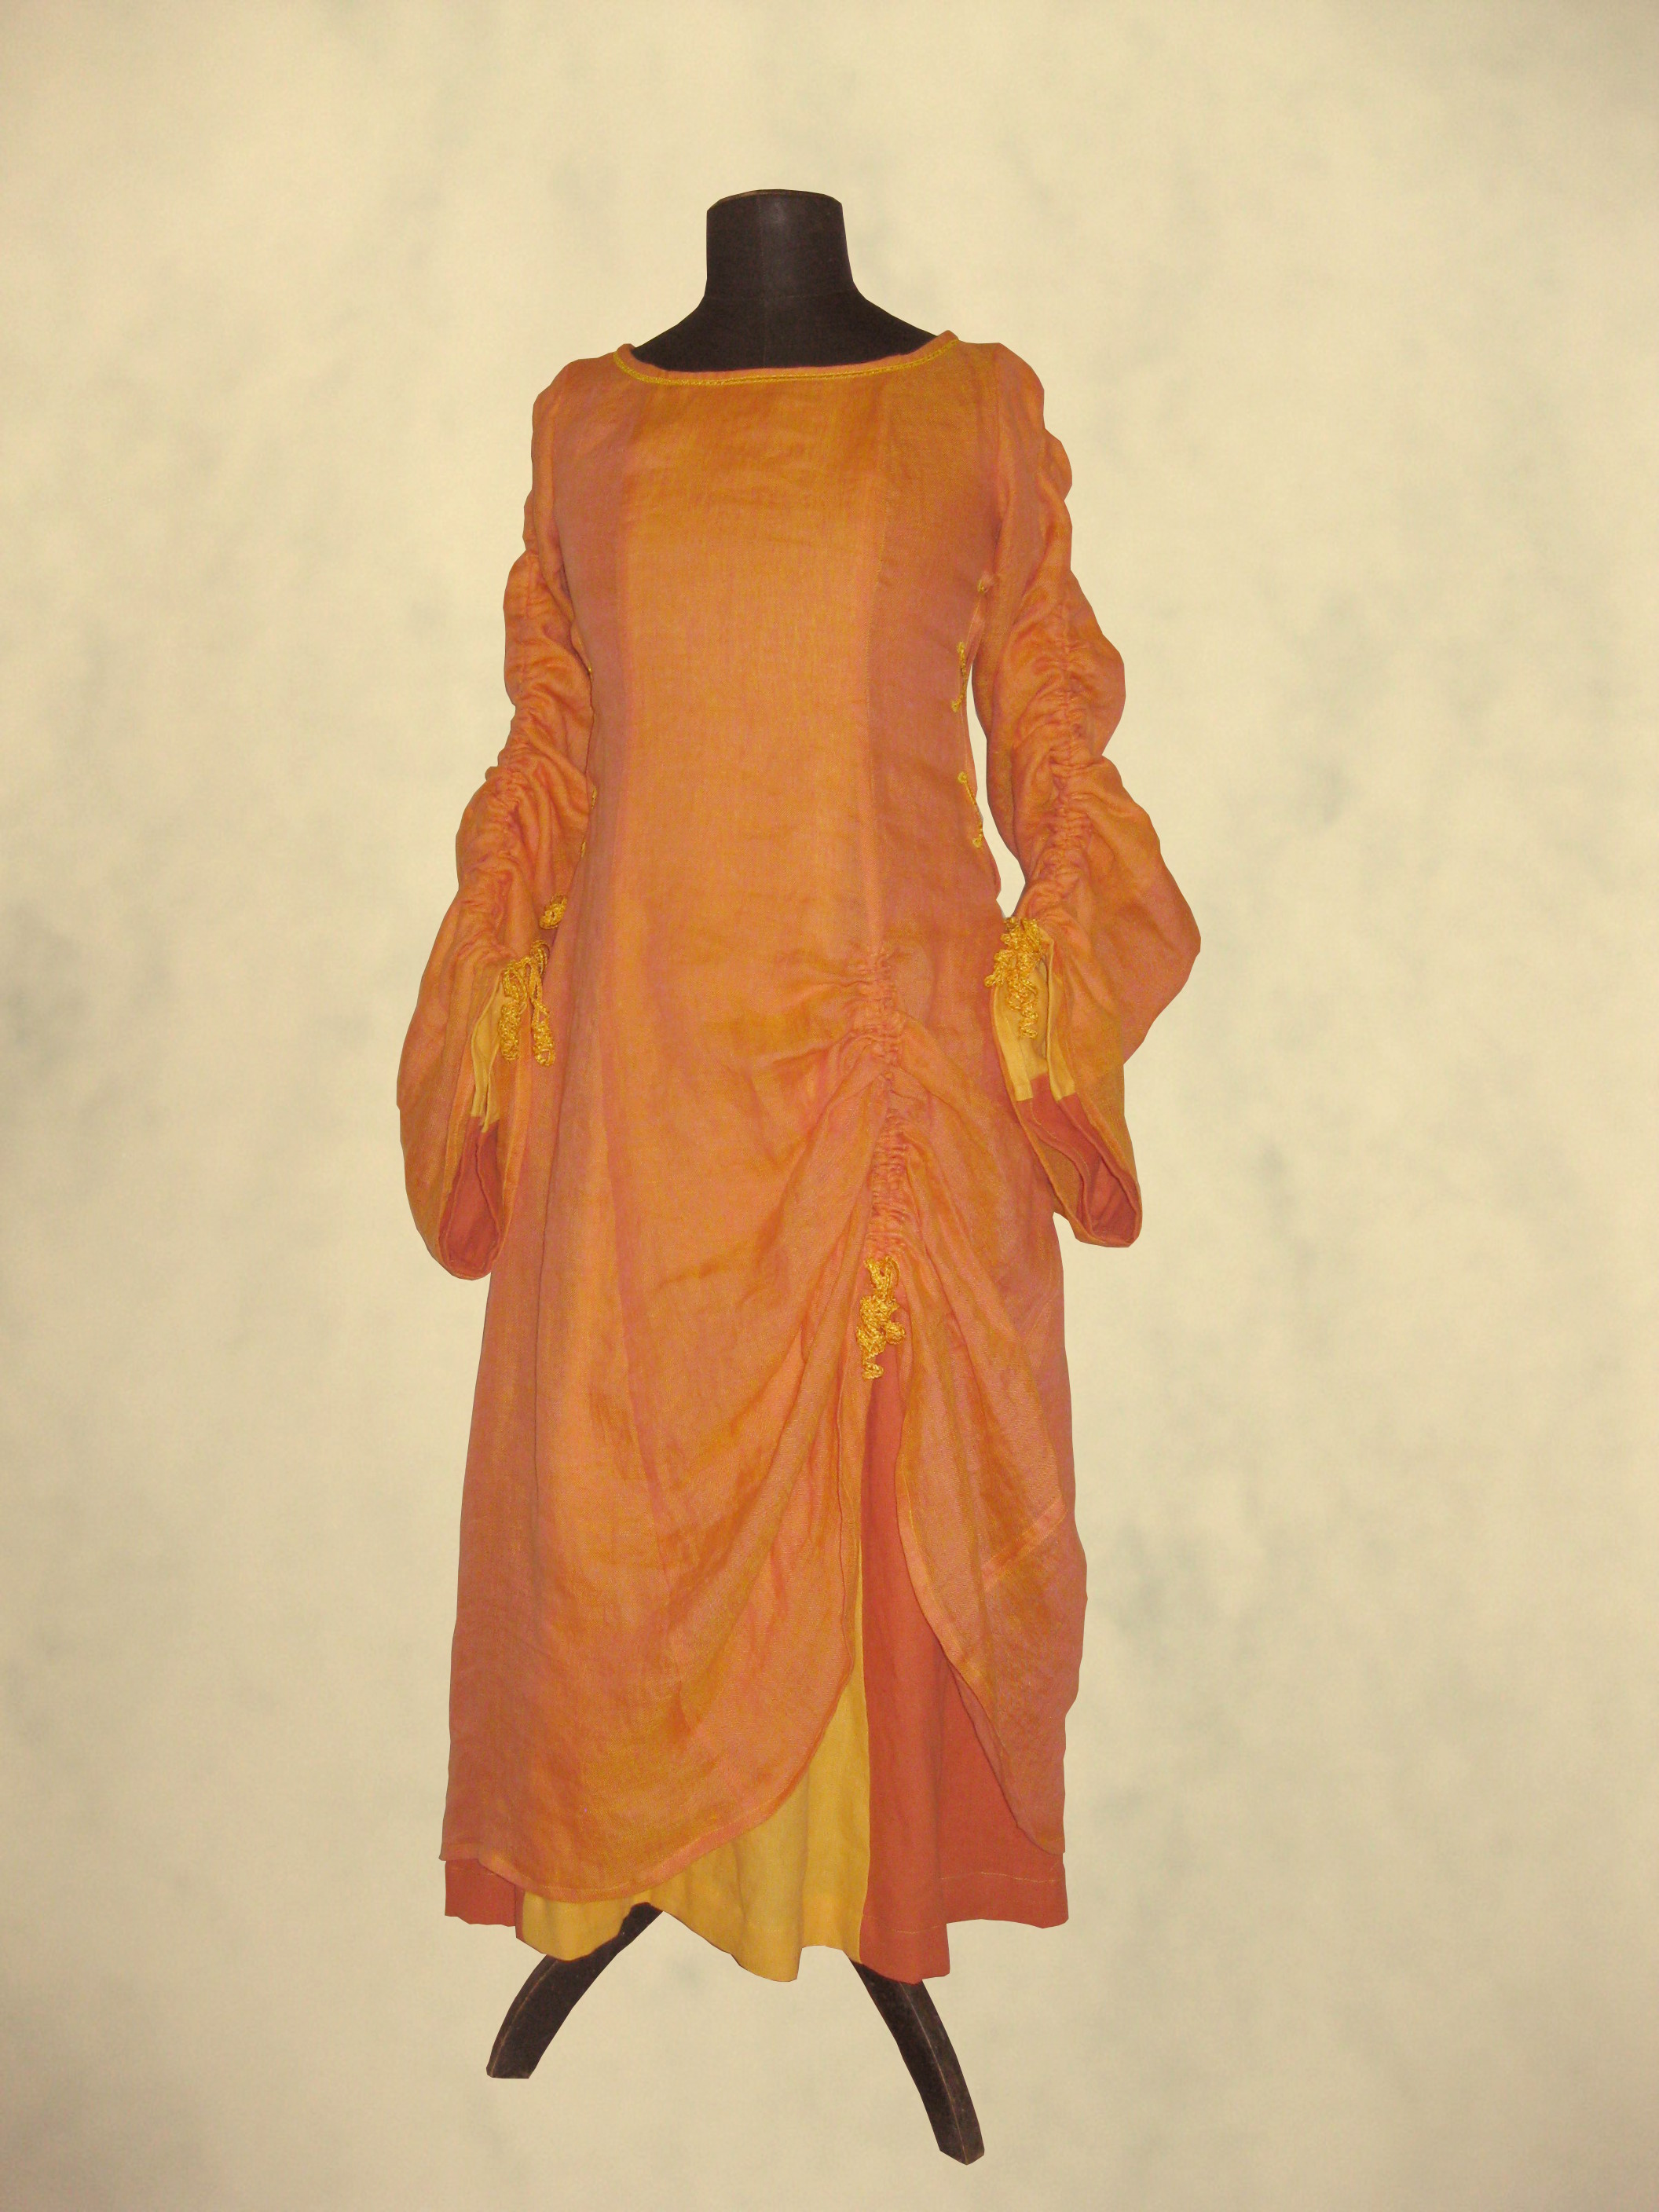 Bild: Zweilagiges Kleid einer Feuerpriesterin.